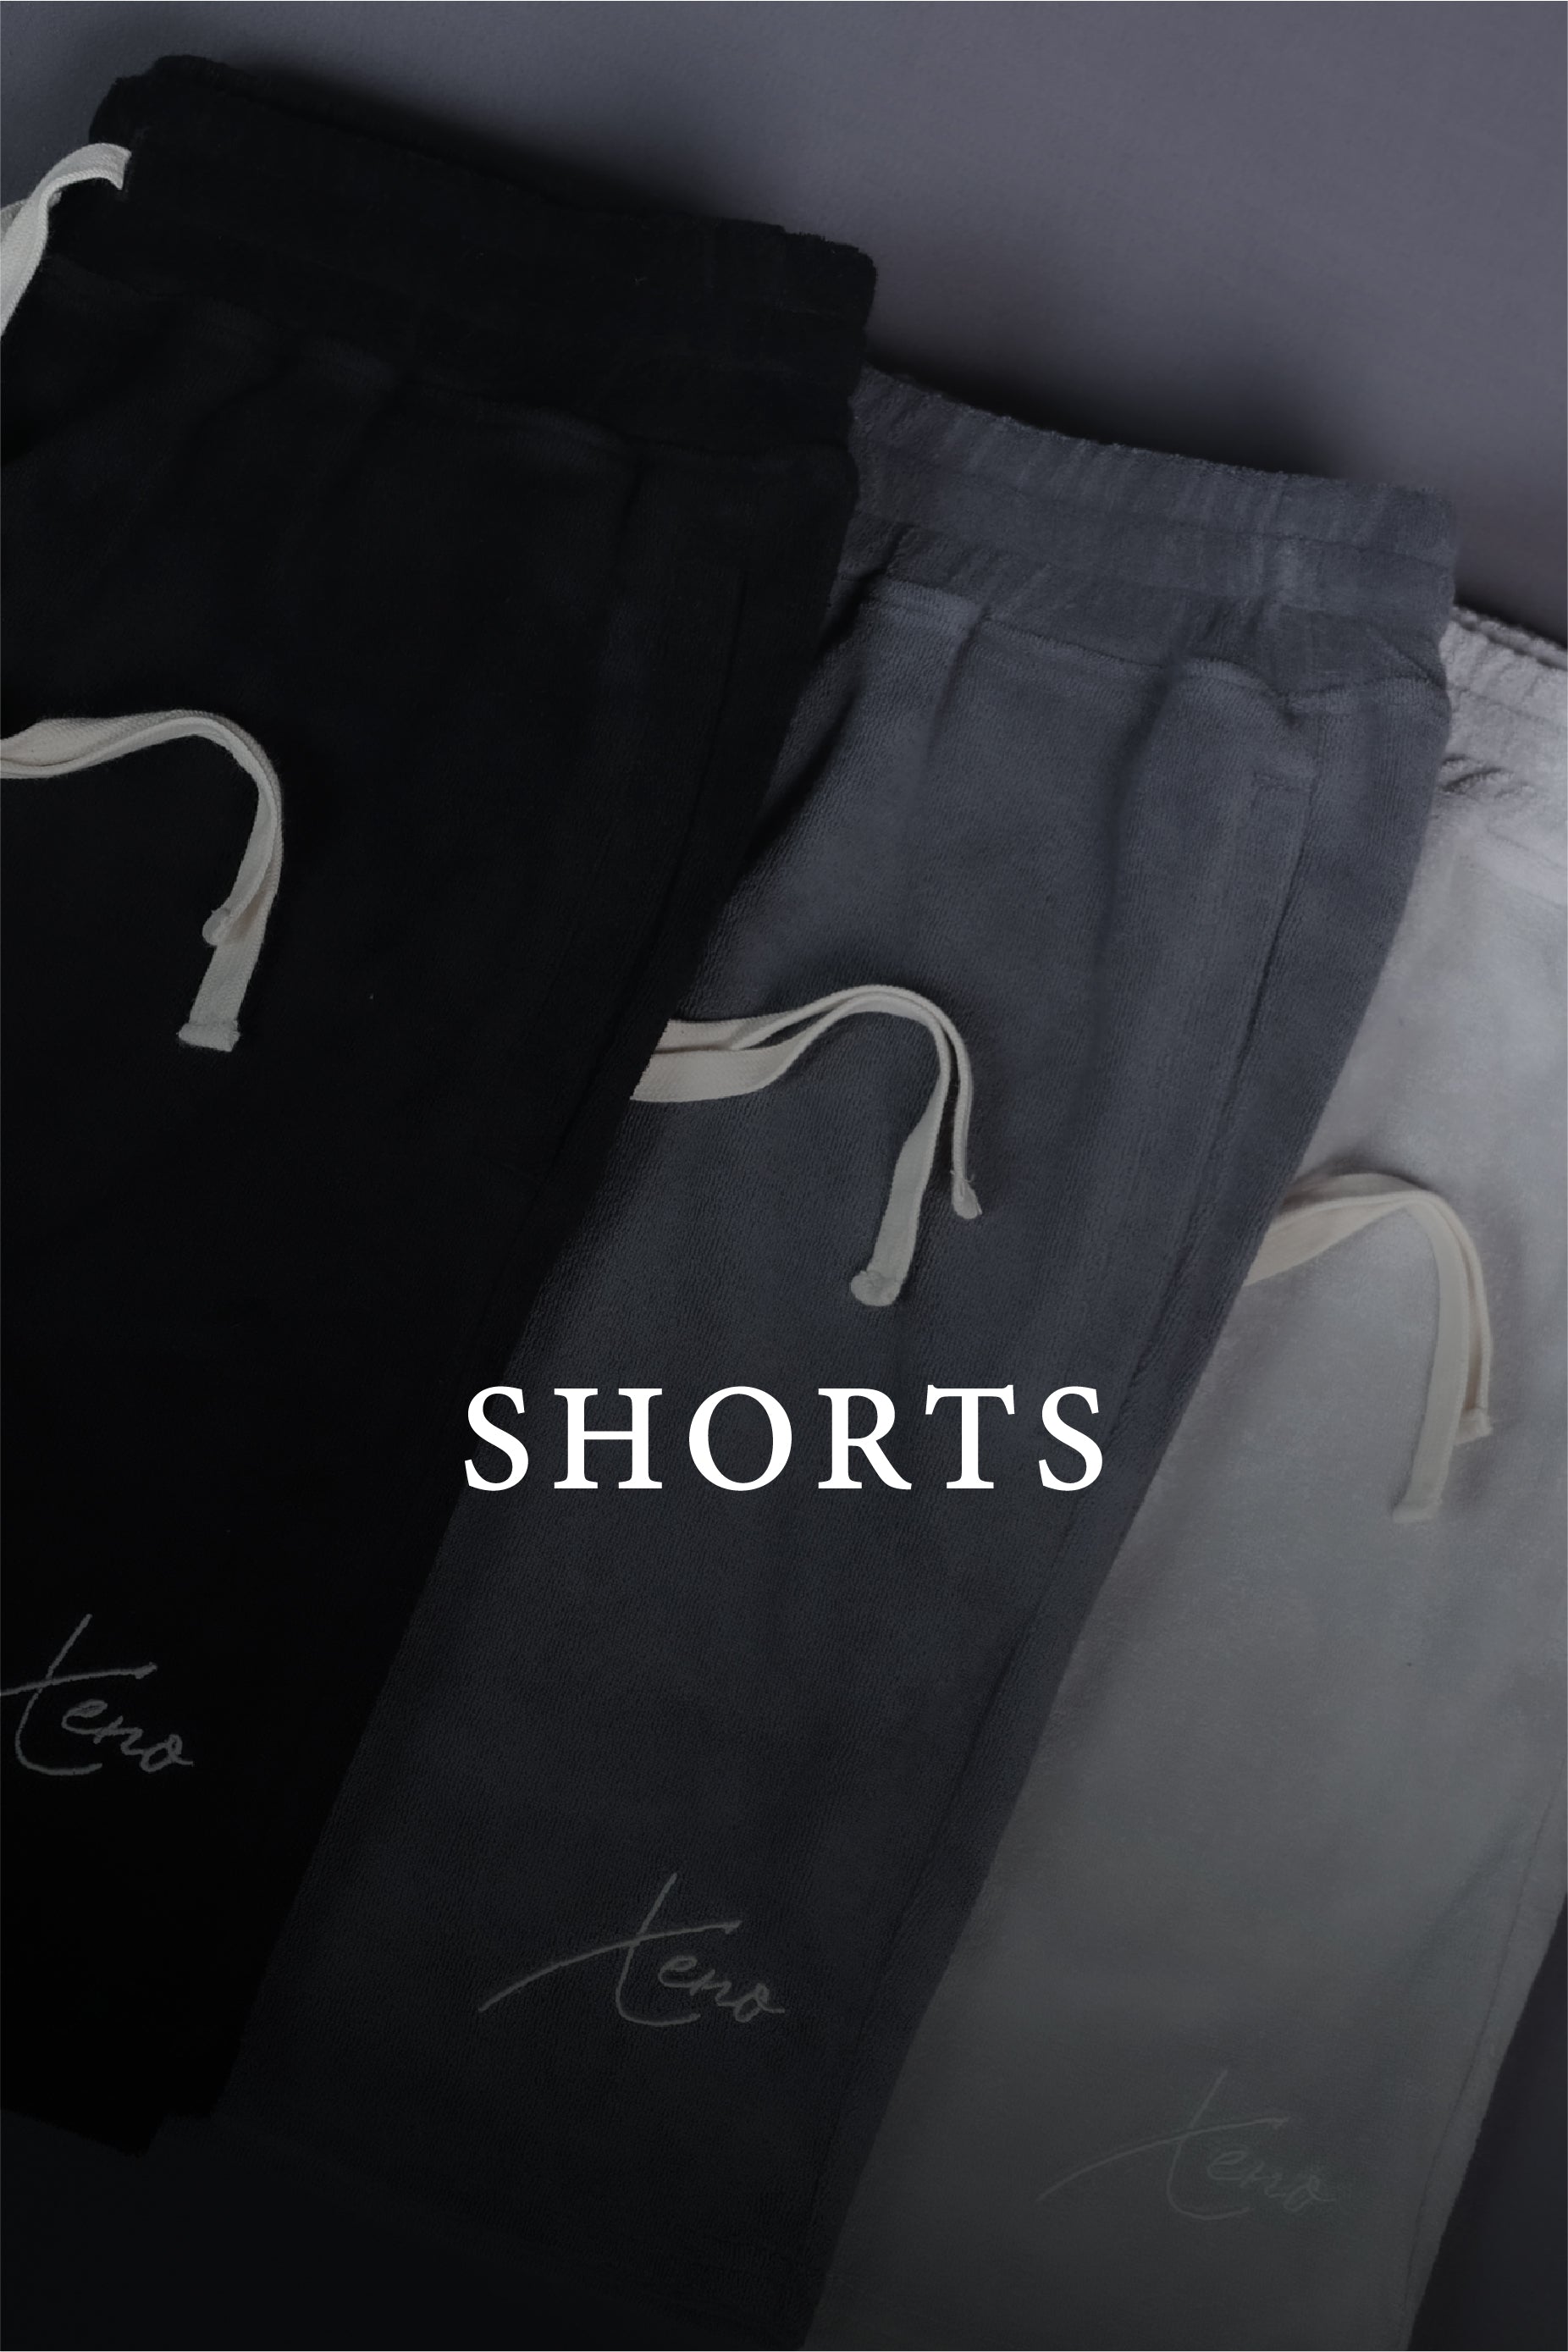 Shorts – XENO